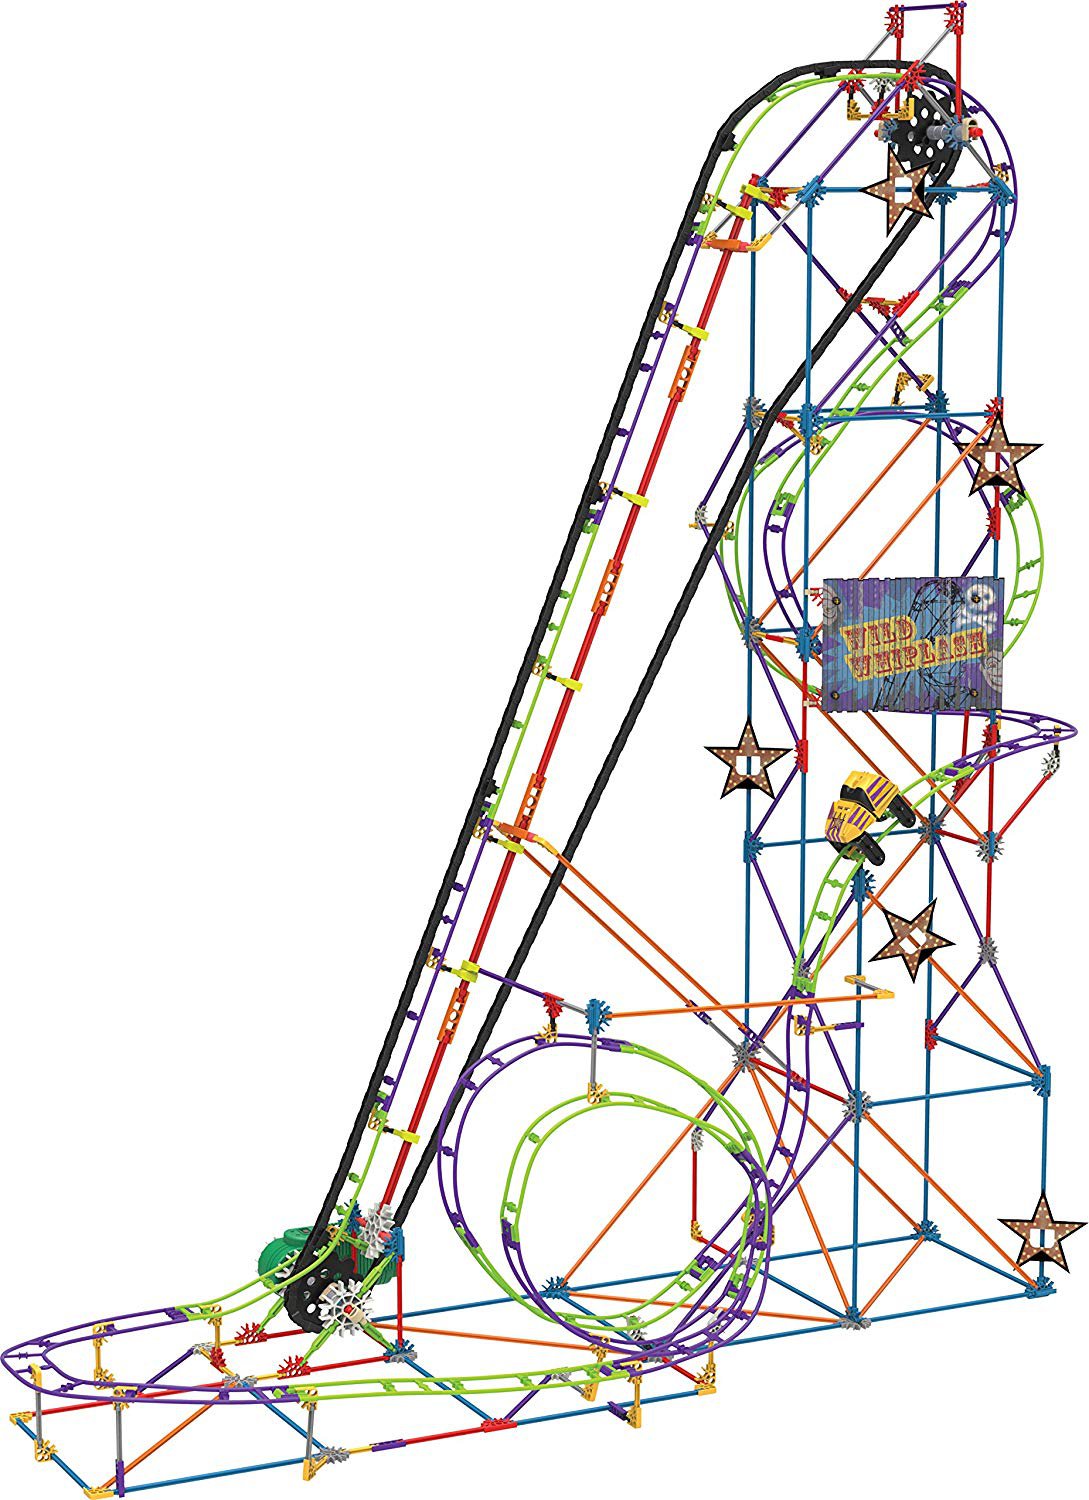 KNEX Wild Whiplash Roller Coaster Building Set - 580 Piece - MOTORIZED!